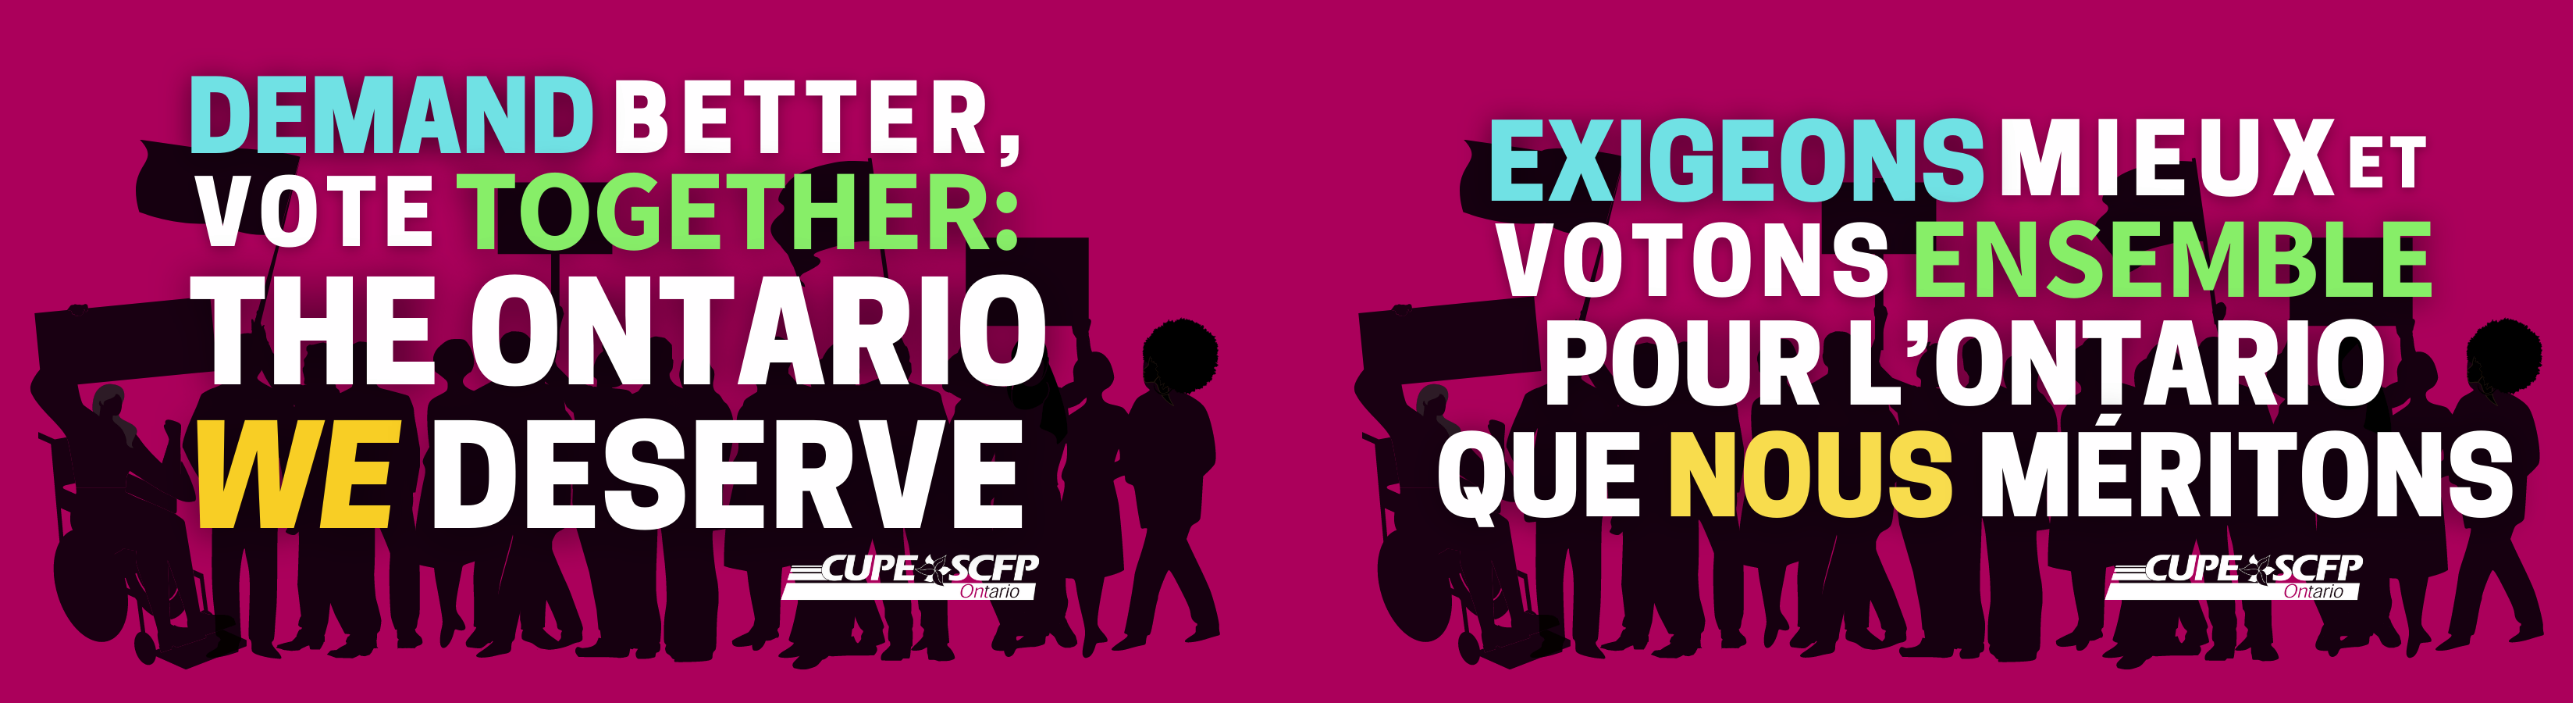 Demand Better, Vote Together: The Ontario We Deserve / Exigeons Mieux et Votons Ensemble Pour L'Ontario Que Nous Meritons